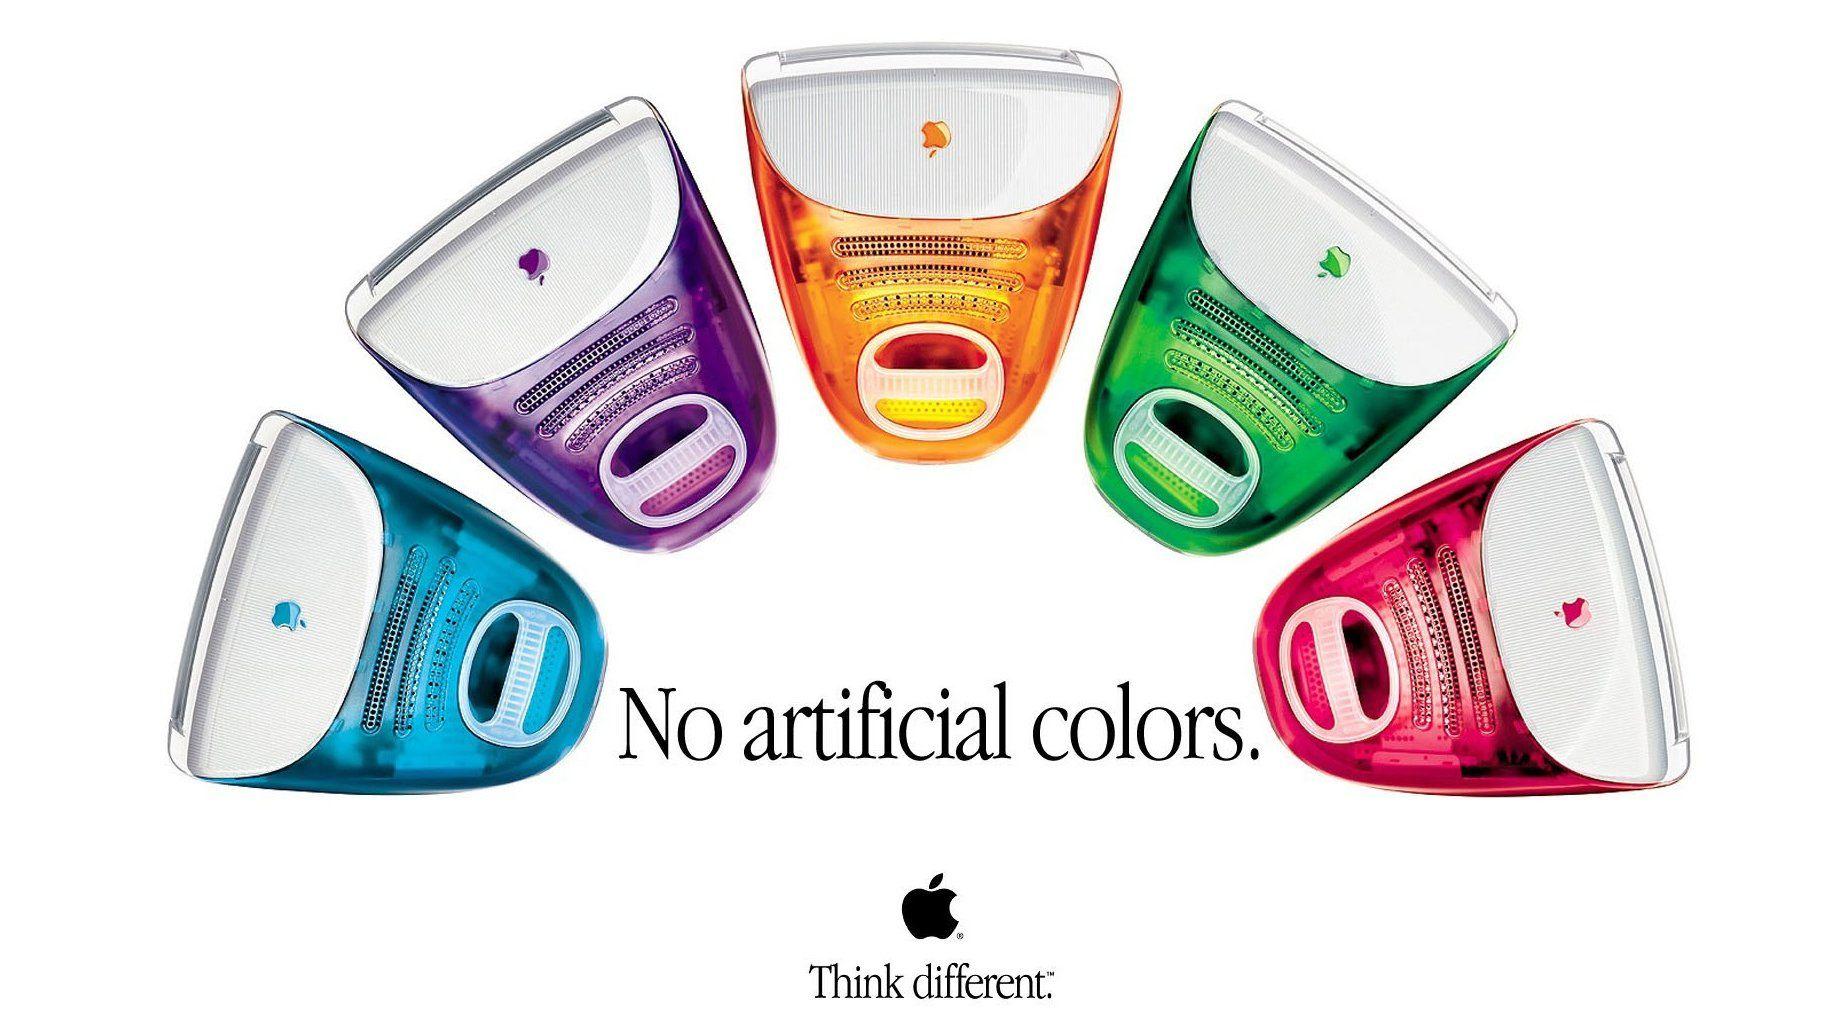 Nový iMac príde v piatich farbách